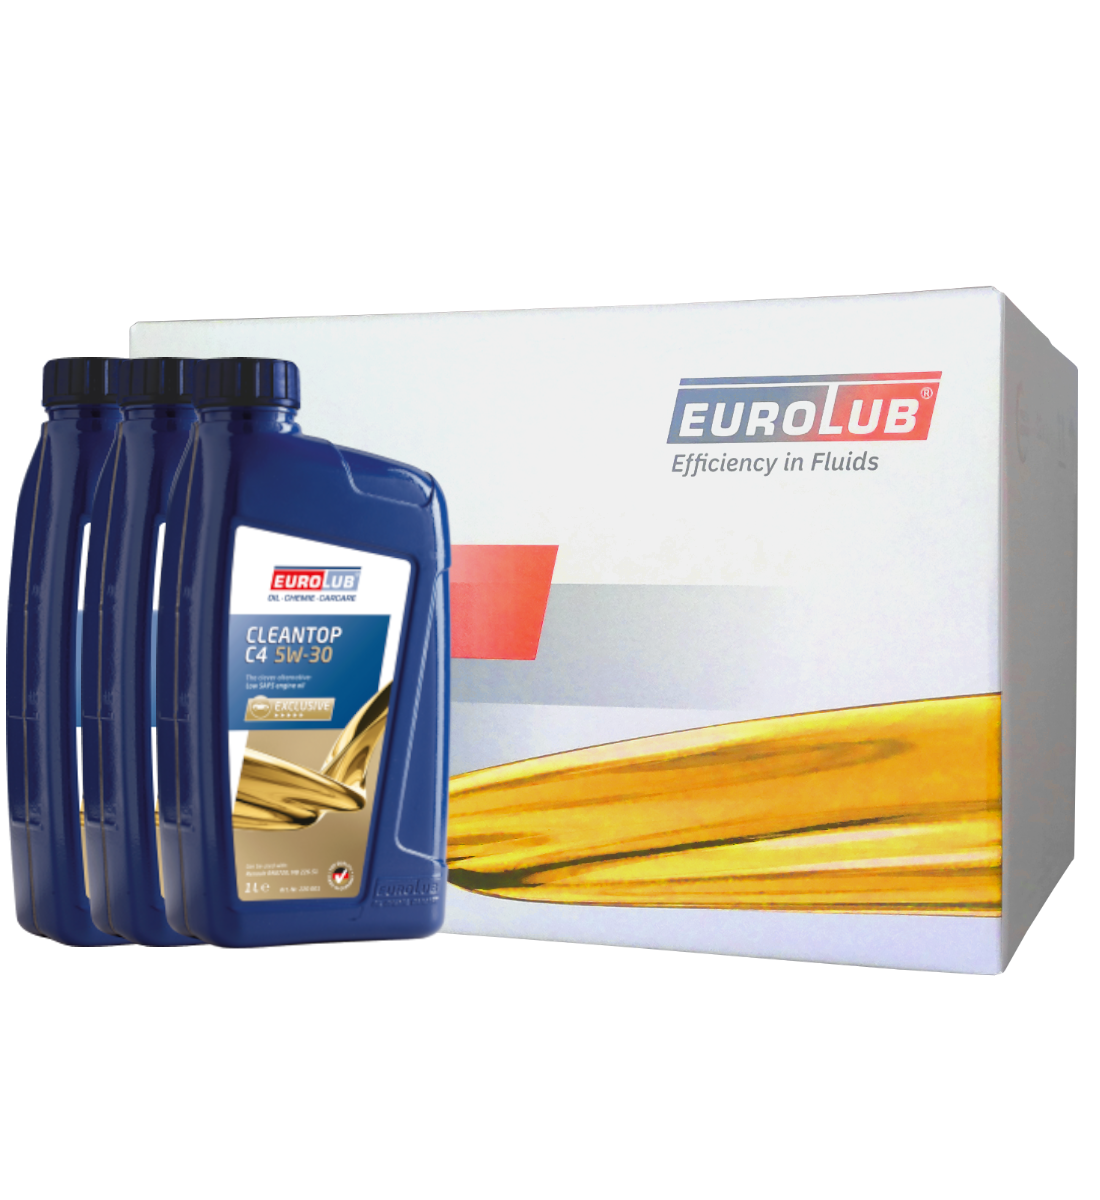 Eurolub Motoröl 5W30 Cleantop C4 5W-30 - ab 5,99€